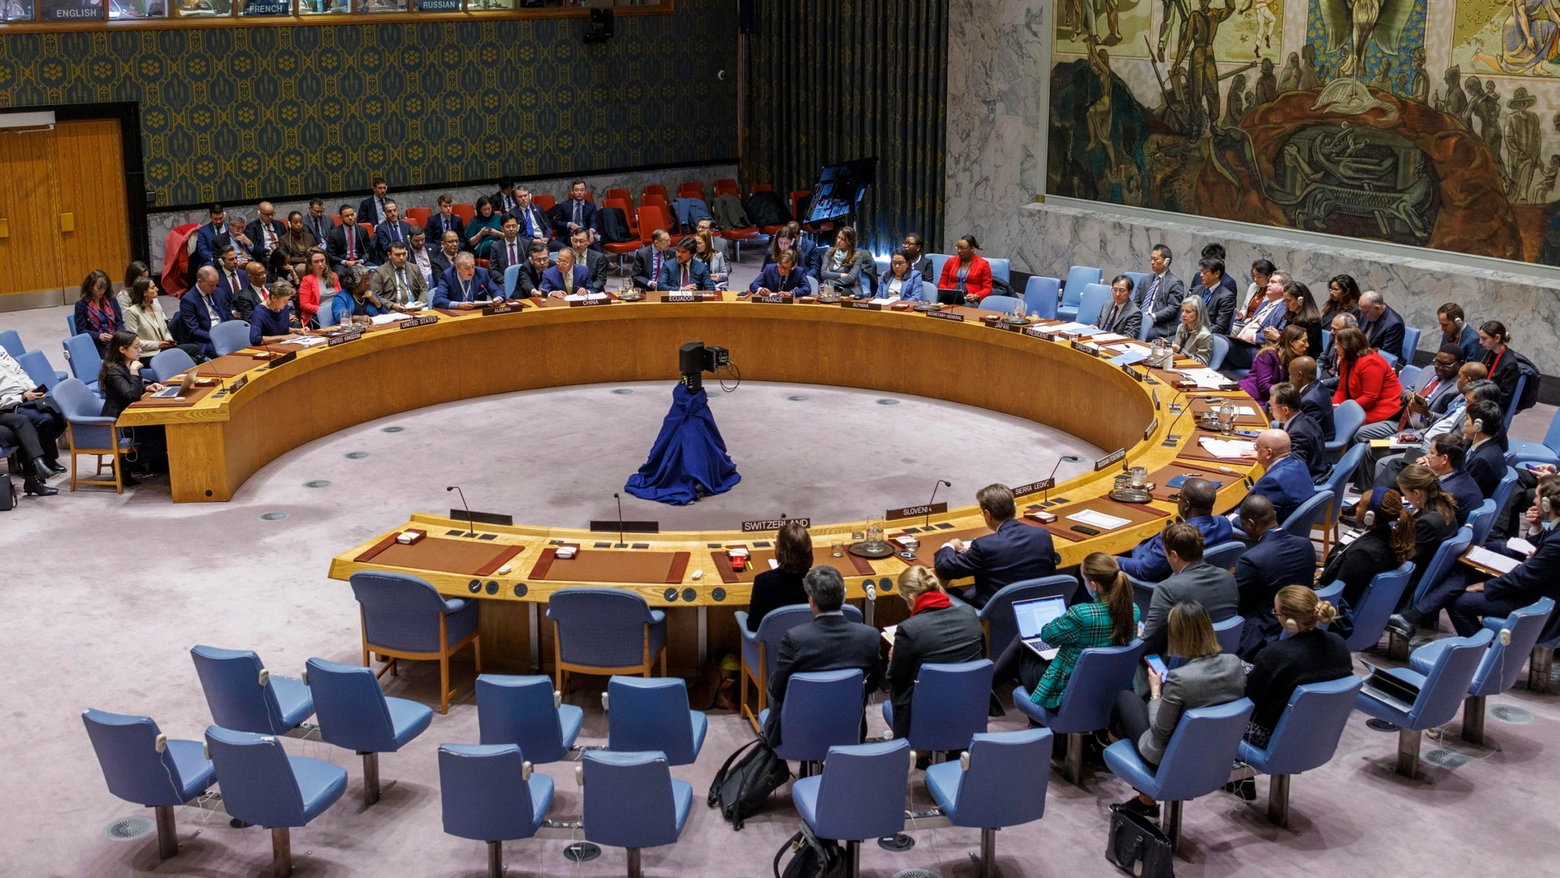 L'assemblea dell'Onu riunita per decidere una risoluzione su Gaza (Ansa)